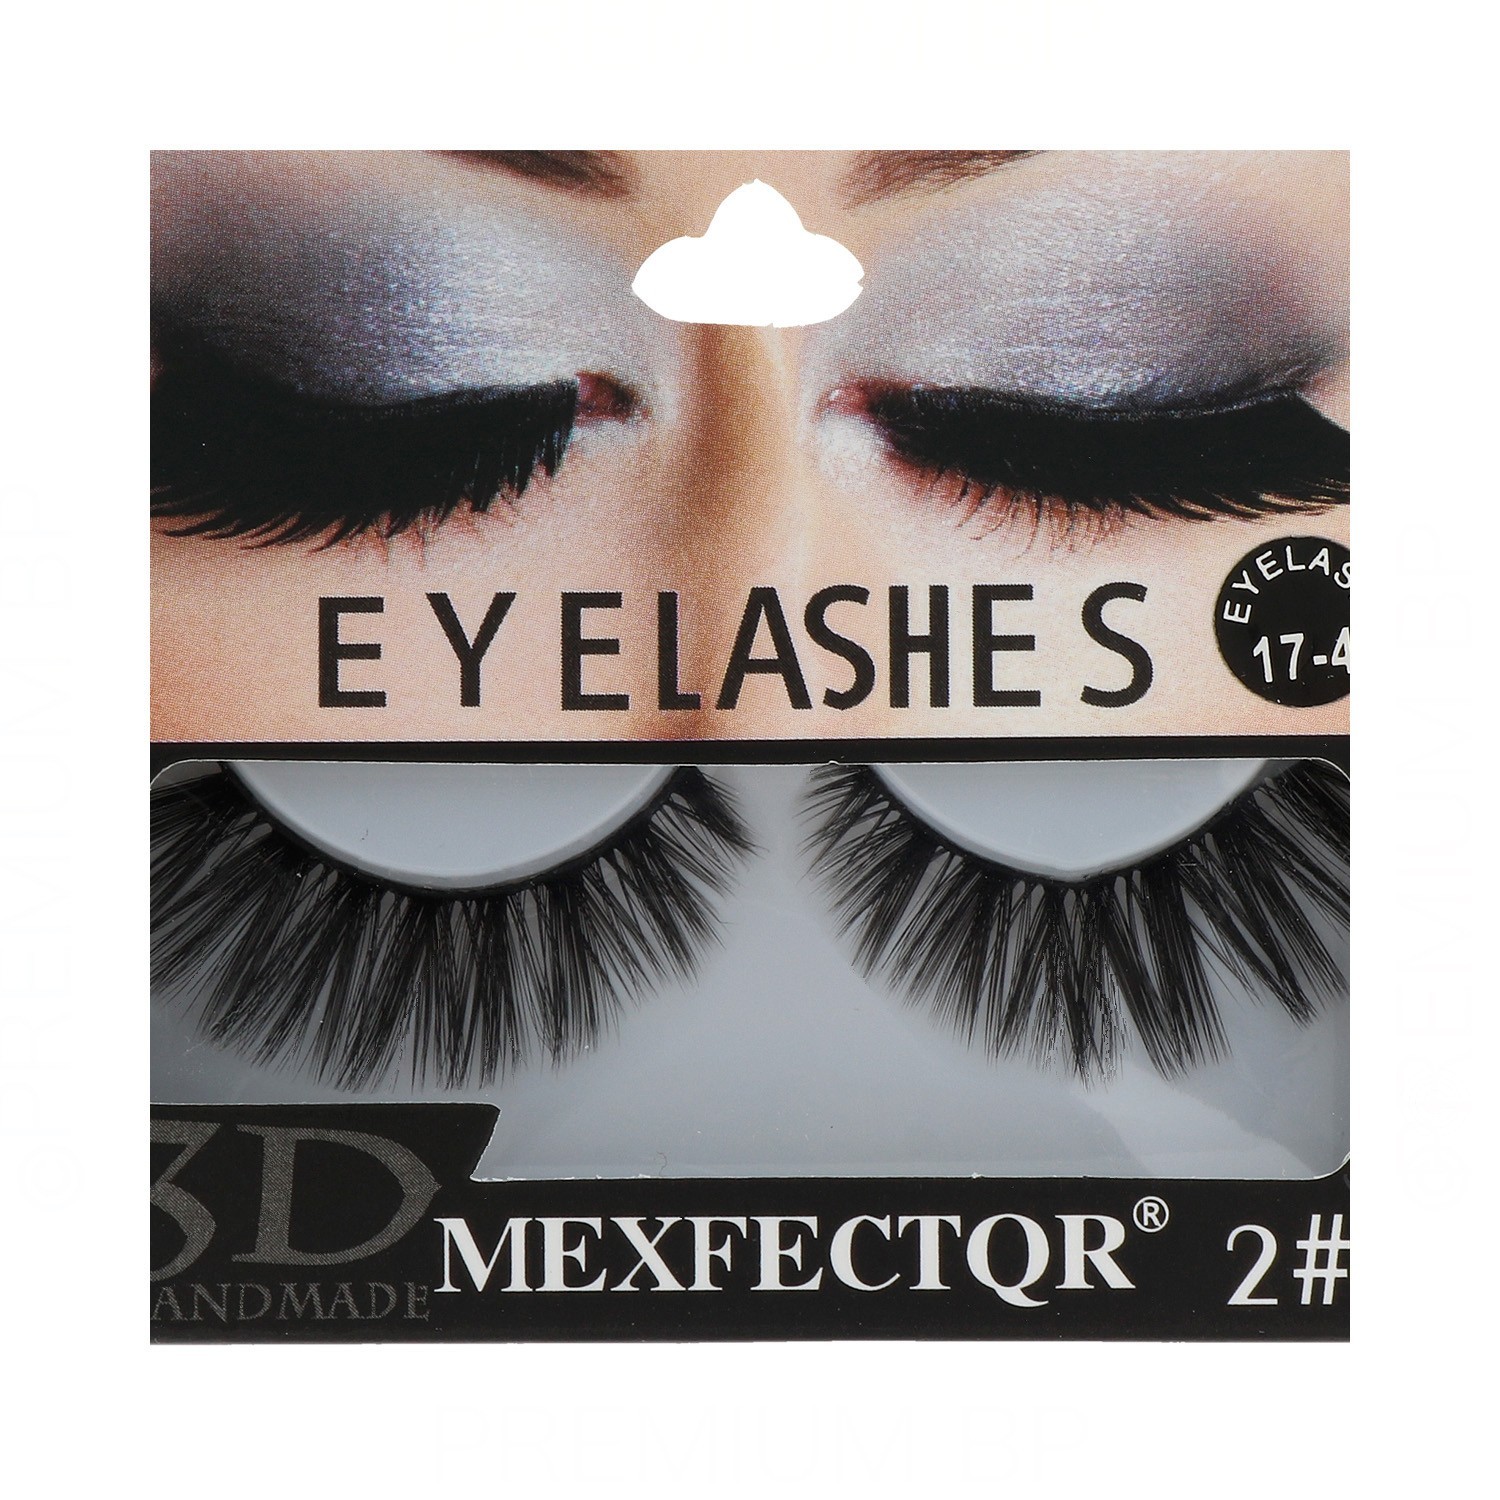 Lb Eyelashes 3D Mexfector (3D-17-4)